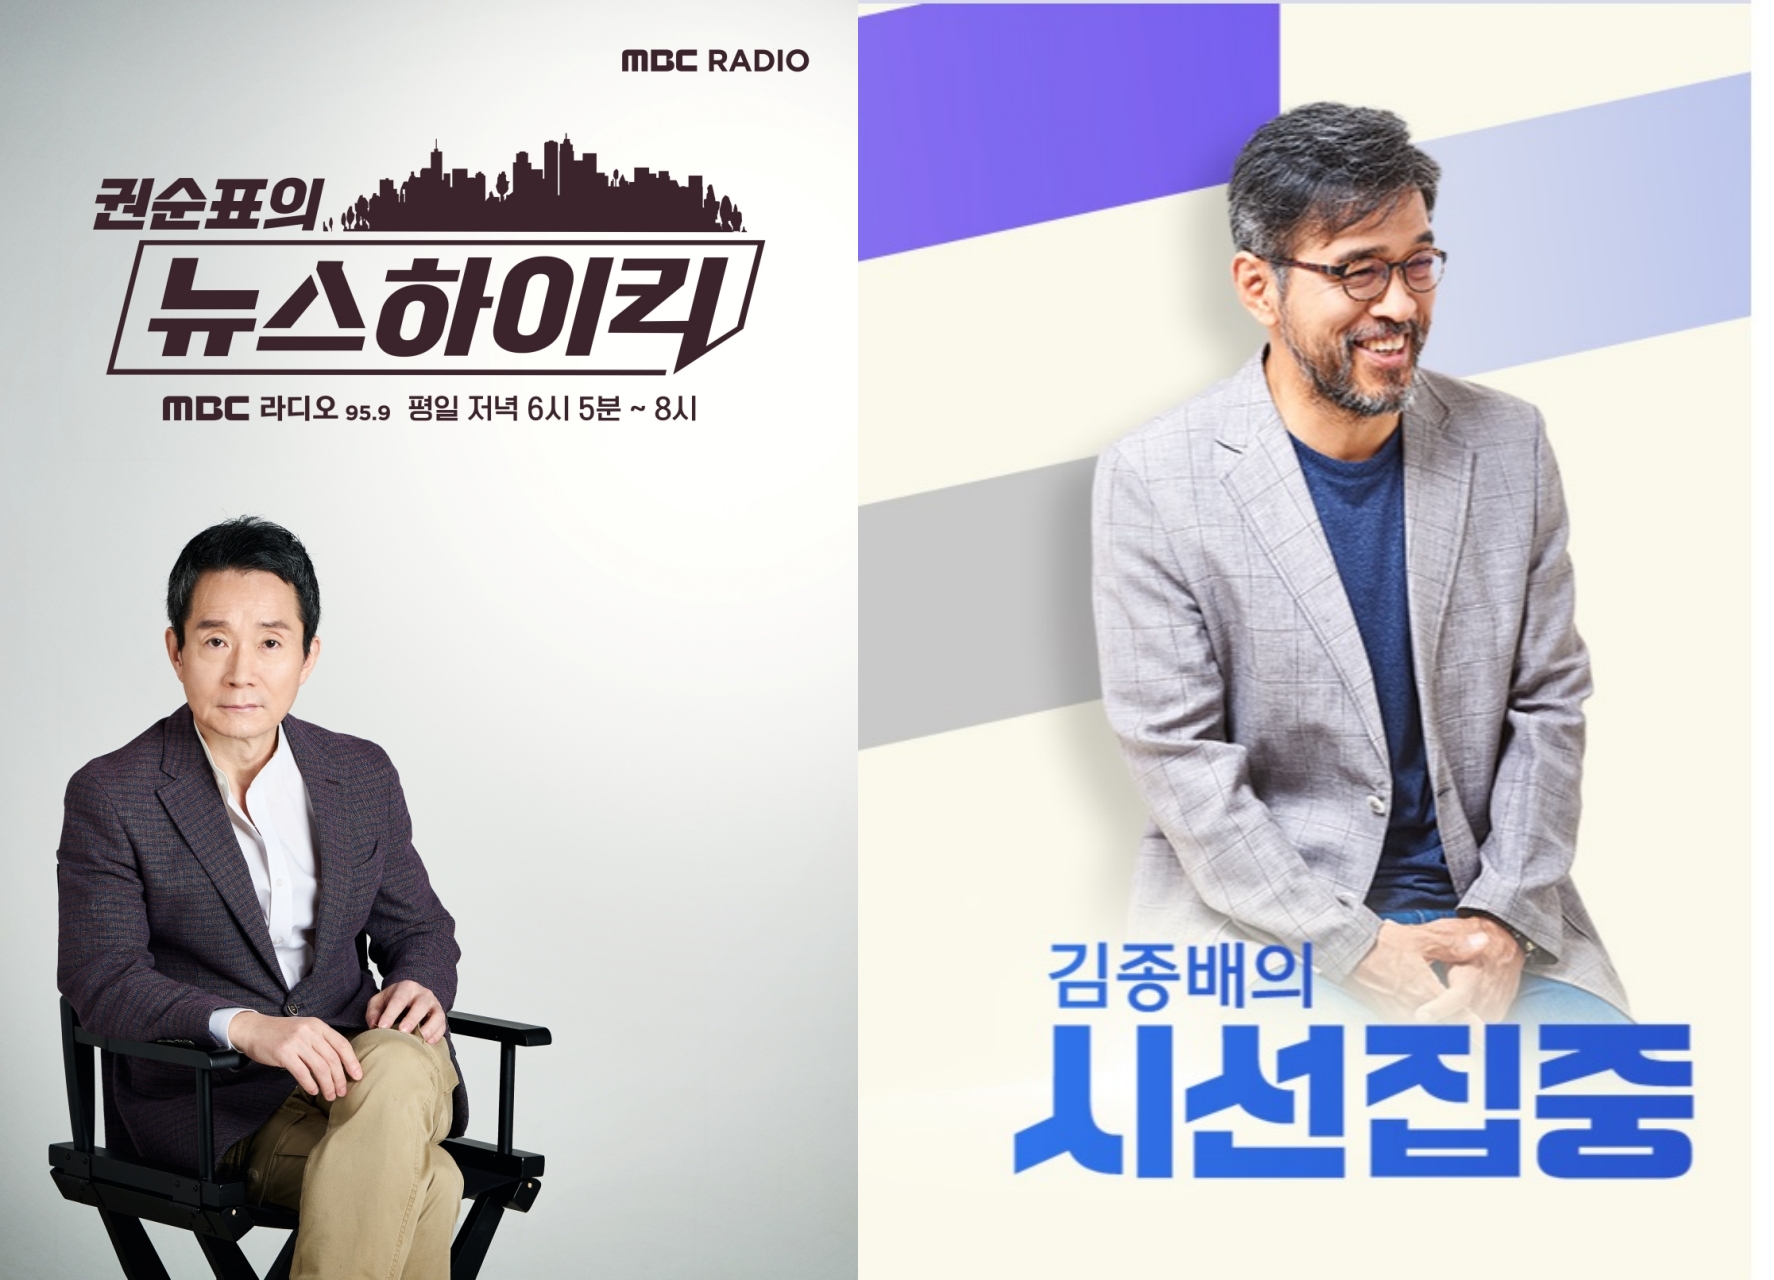 MBC 표준 FM, 전체 라디오 채널 점유청취율 4라운드 연속 1위